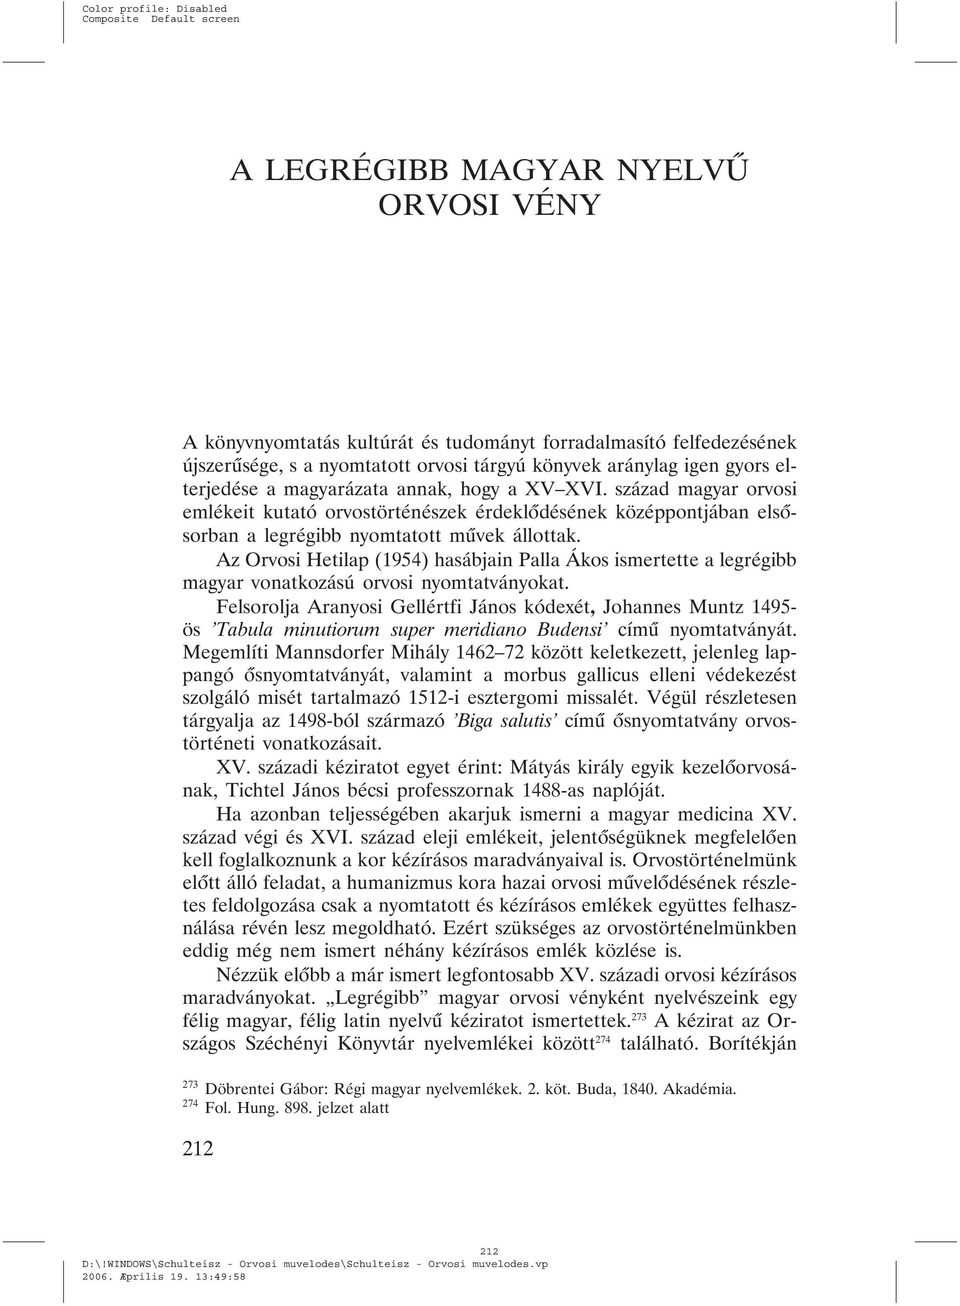 Az Orvosi Hetilap (1954) hasábjain Palla Ákos ismertette a legrégibb magyar vonatkozású orvosi nyomtatványokat.